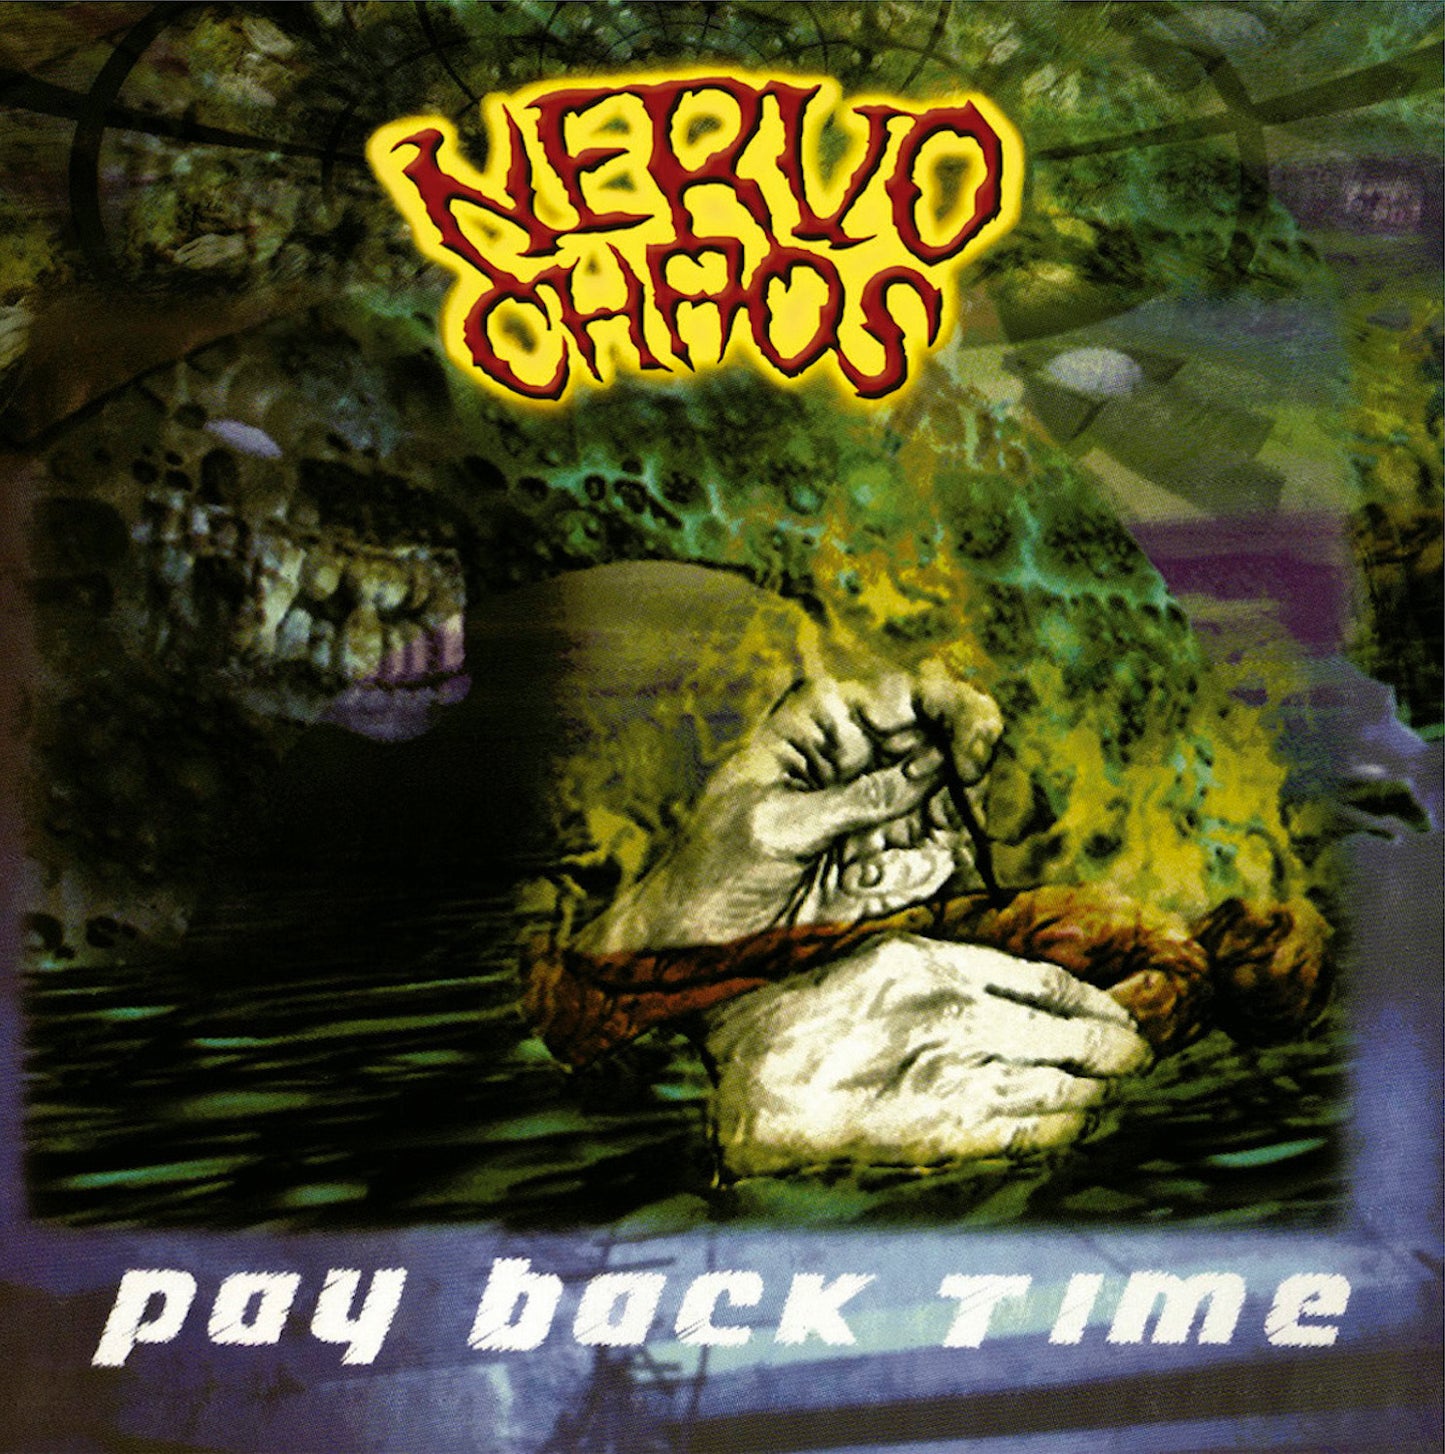 12"LP Gatefold "Pay Back Time" (1998)